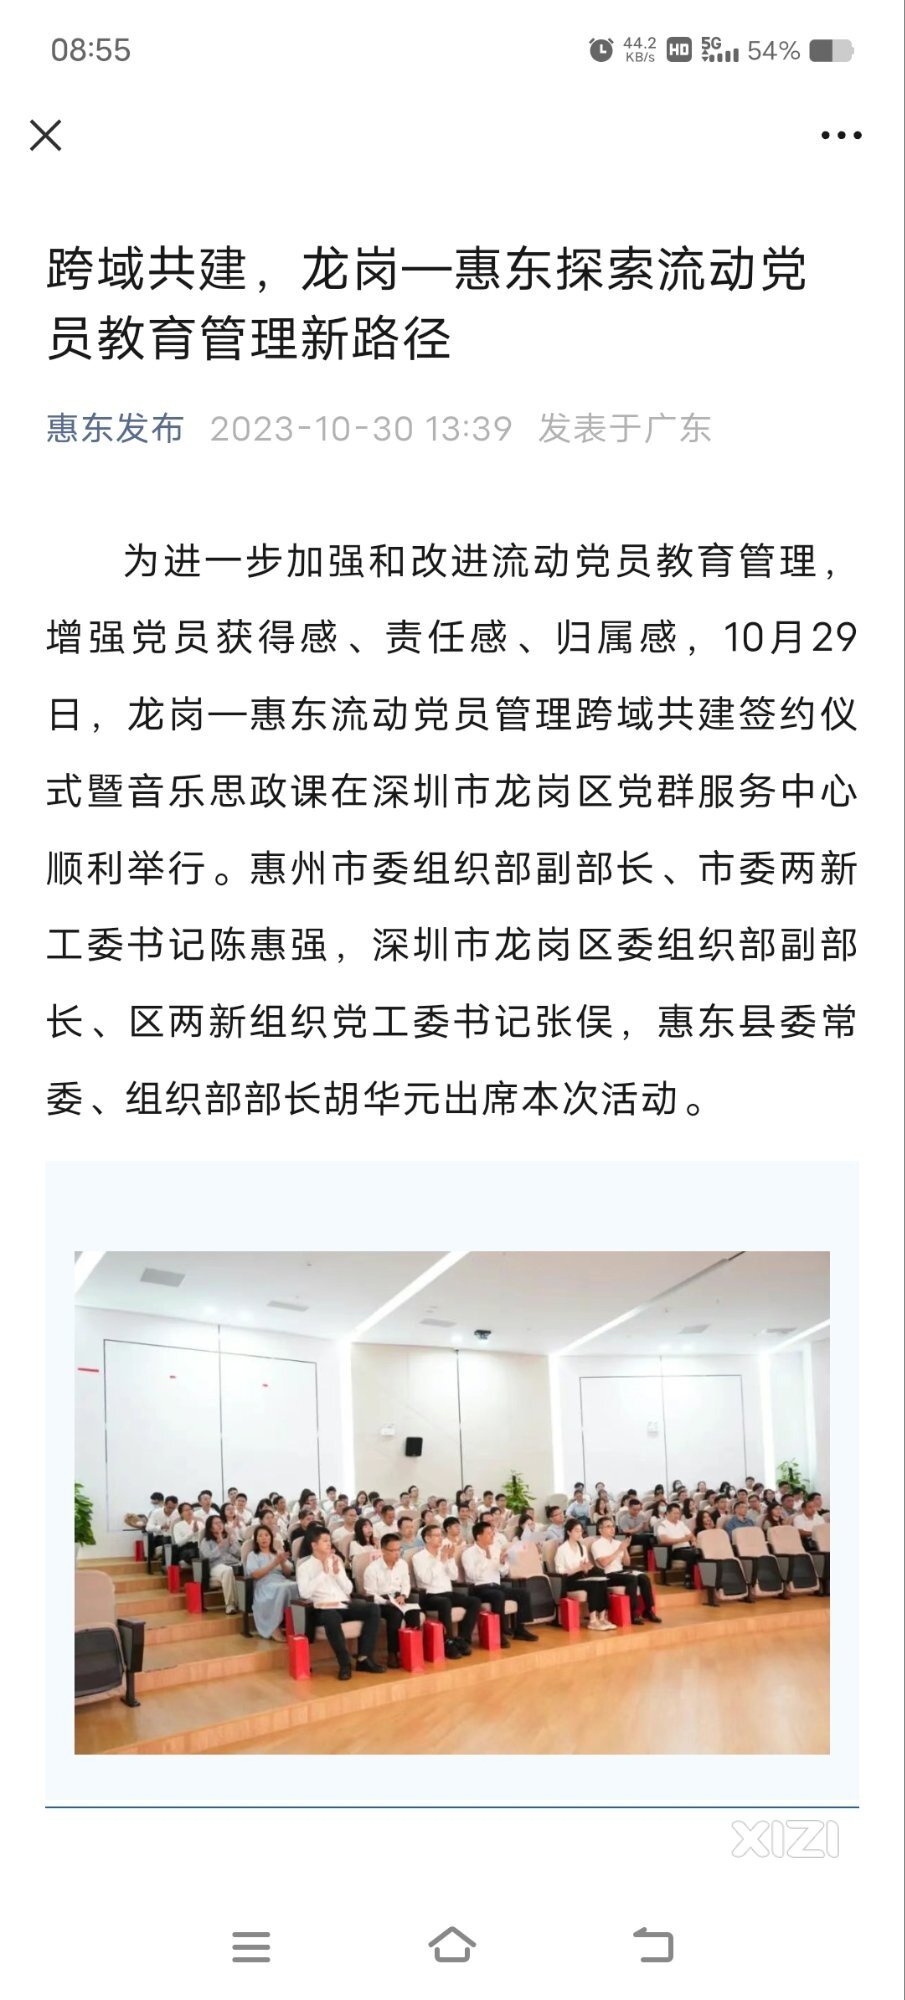 2016提出对标深圳南山。现在是龙岗帮扶惠东。看看未来几年有什么变化